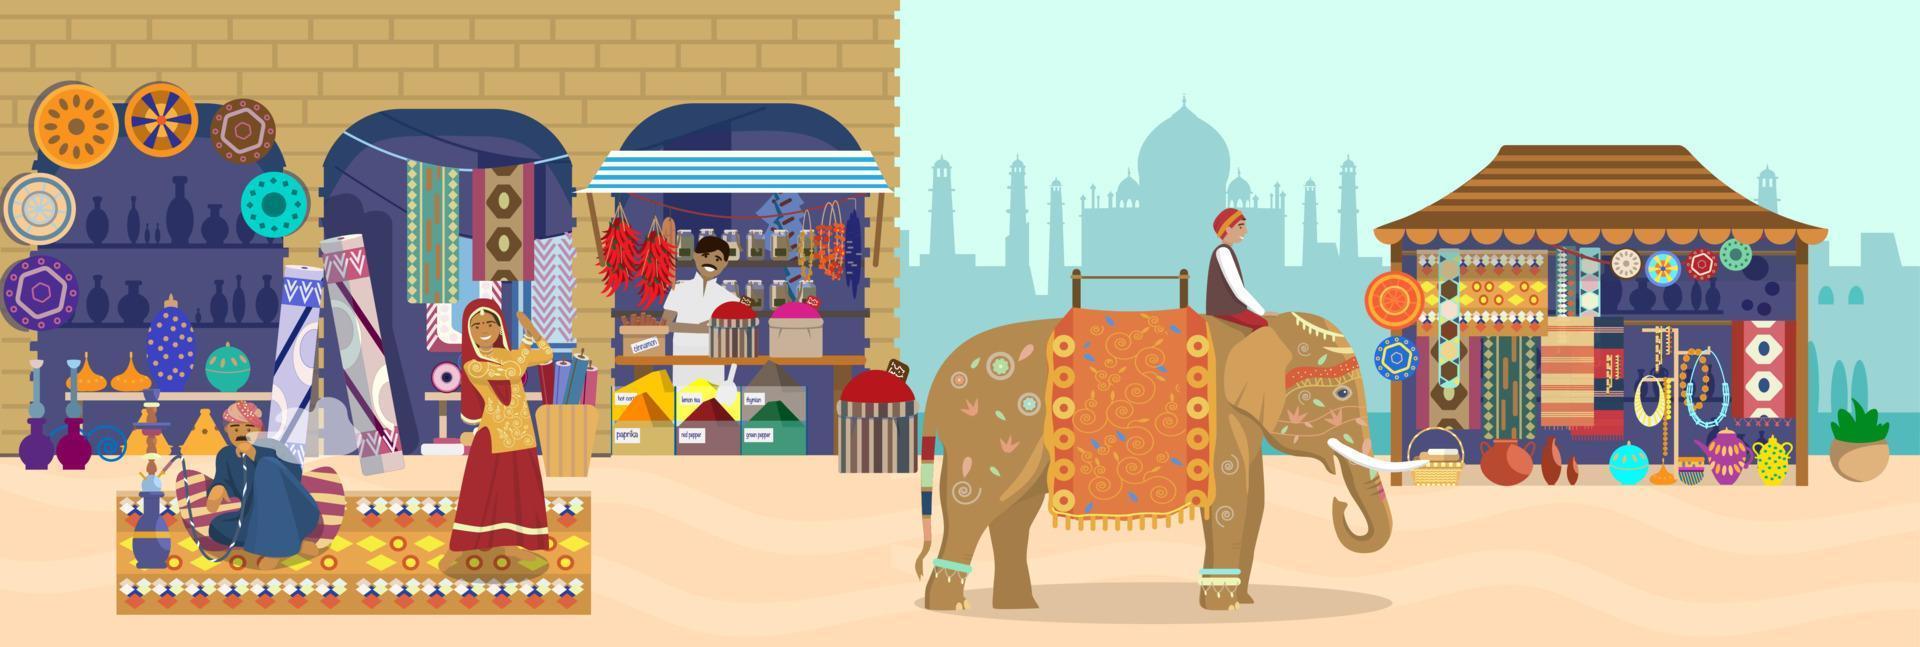 ilustración vectorial del mercado asiático con diferentes tiendas y personas. jinete de elefantes, tienda de souvenirs de silueta taj mahal, cerámica, alfombras, telas, especias, mujer bailarina, hombre fumando narguile. vector